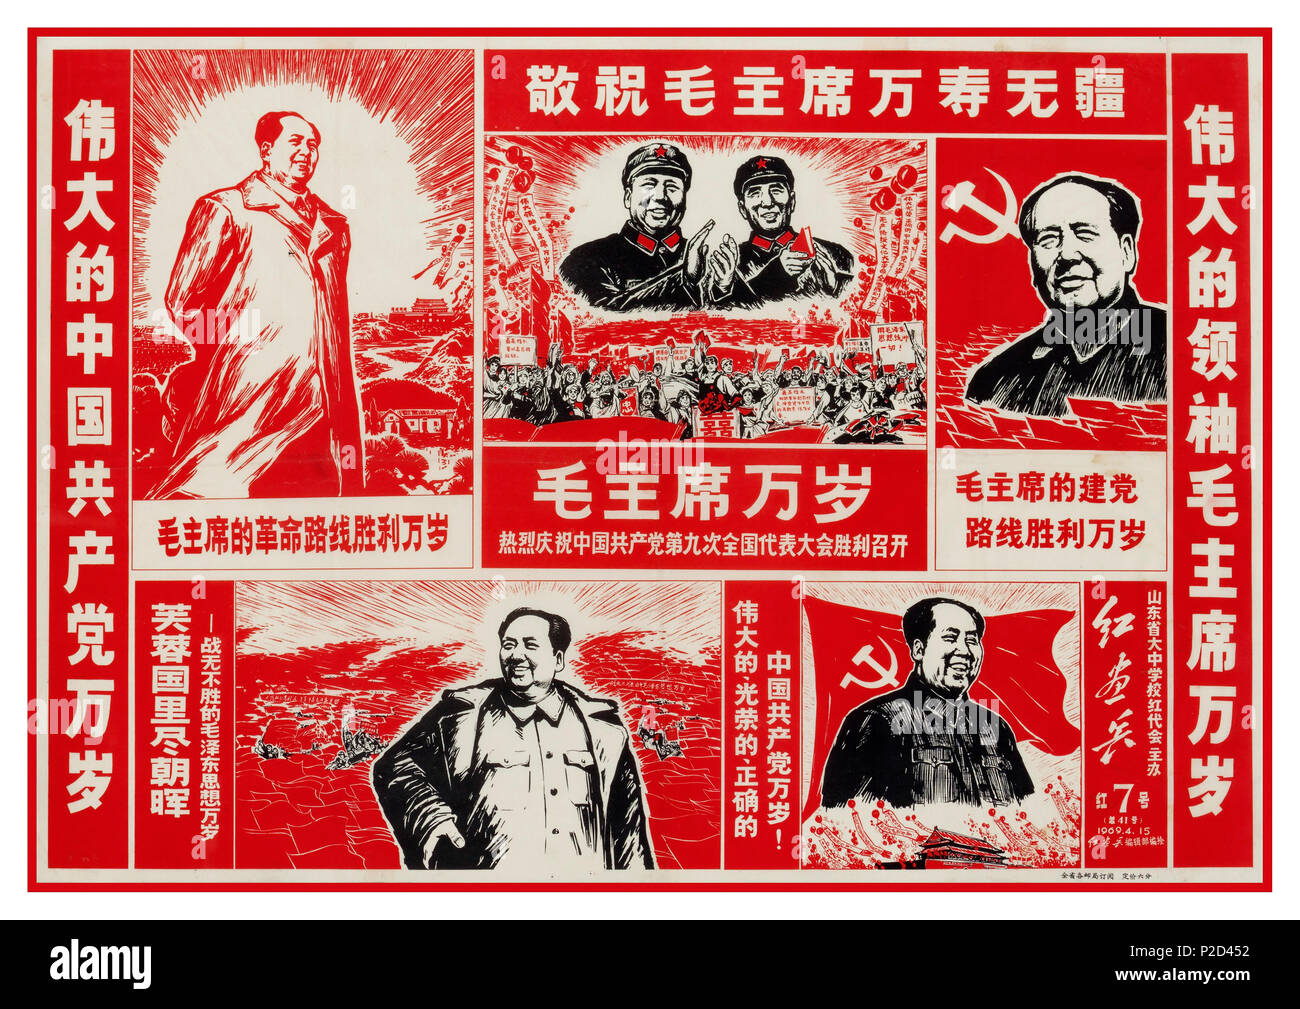 Jahrgang 1960 die chinesische Propaganda Poster mit den Vorsitzenden Mao in  verschiedenen Erscheinungsformen einschließlich der Sowjetunion mit Hammer  und Sichel Flagge Stockfotografie - Alamy